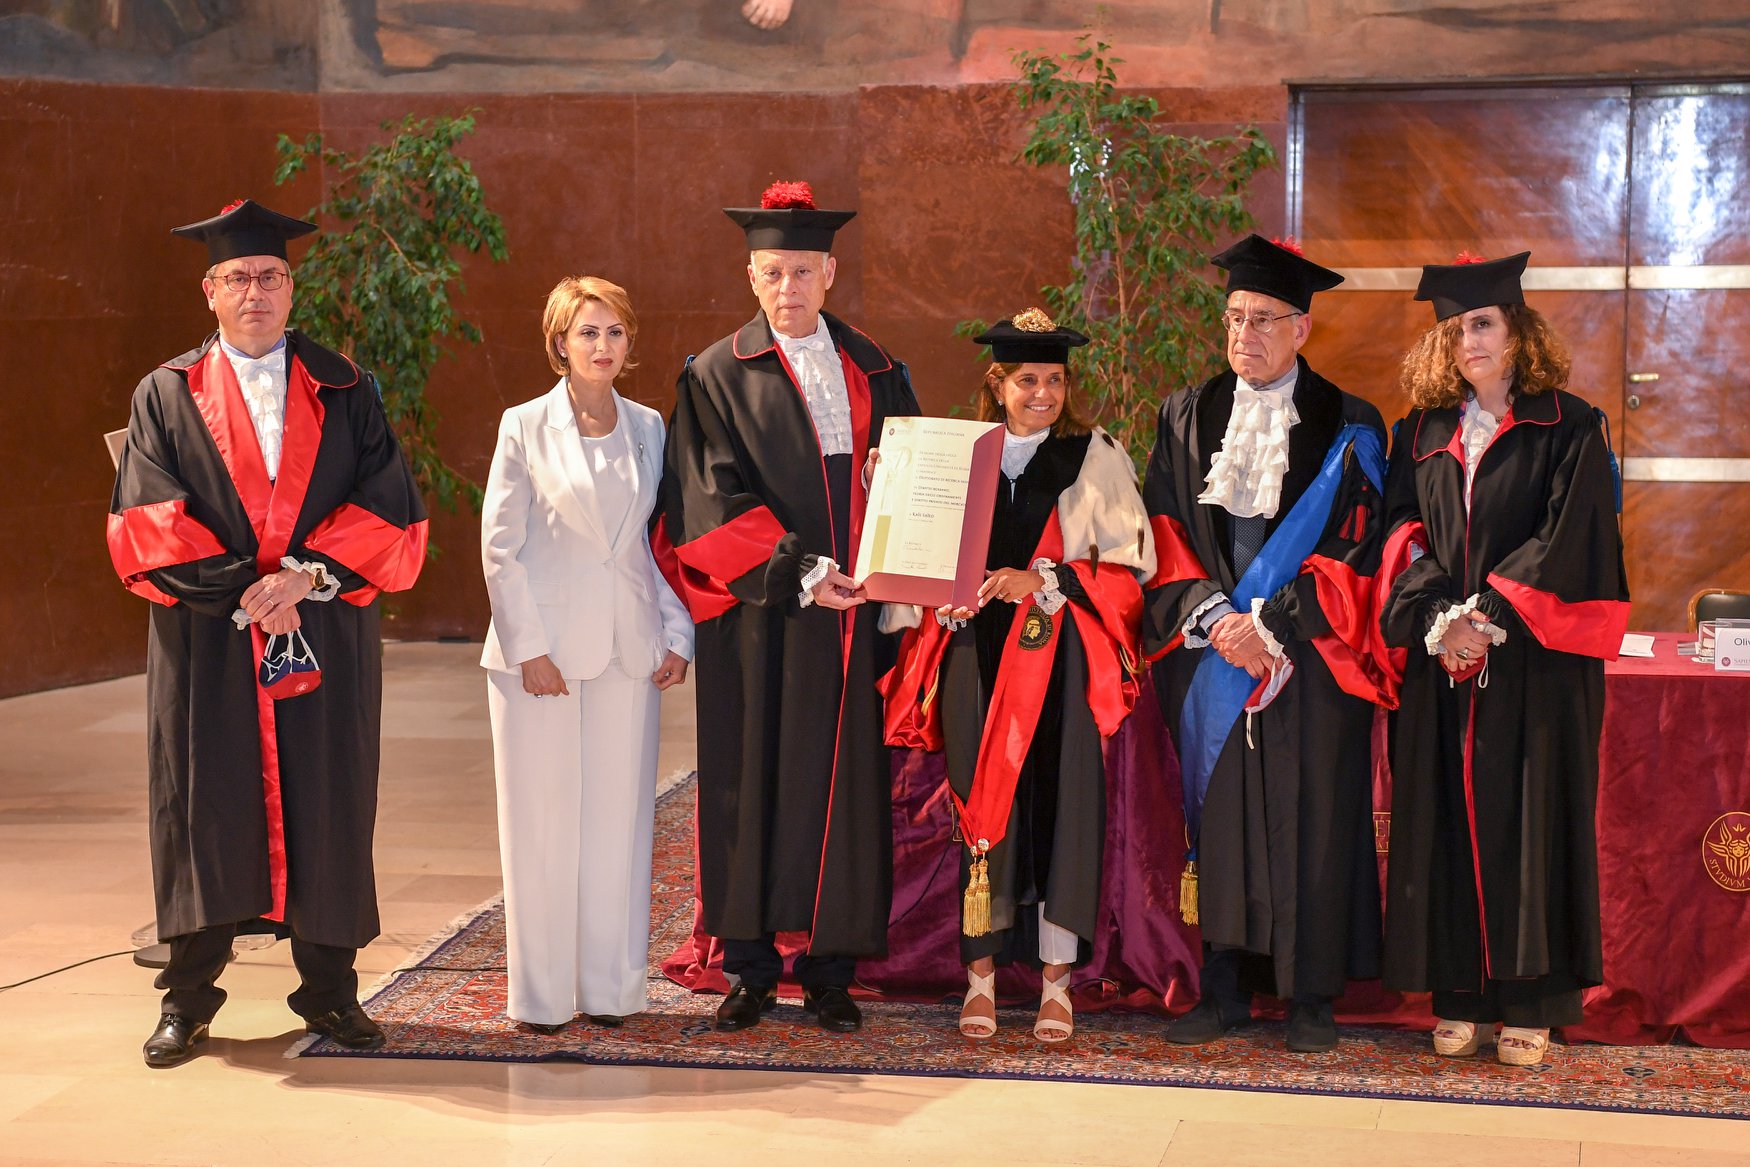 جامعة “لاسابينزا” الإيطالية تمنح قيس سعيد الدكتوراه الفخرية في القانون